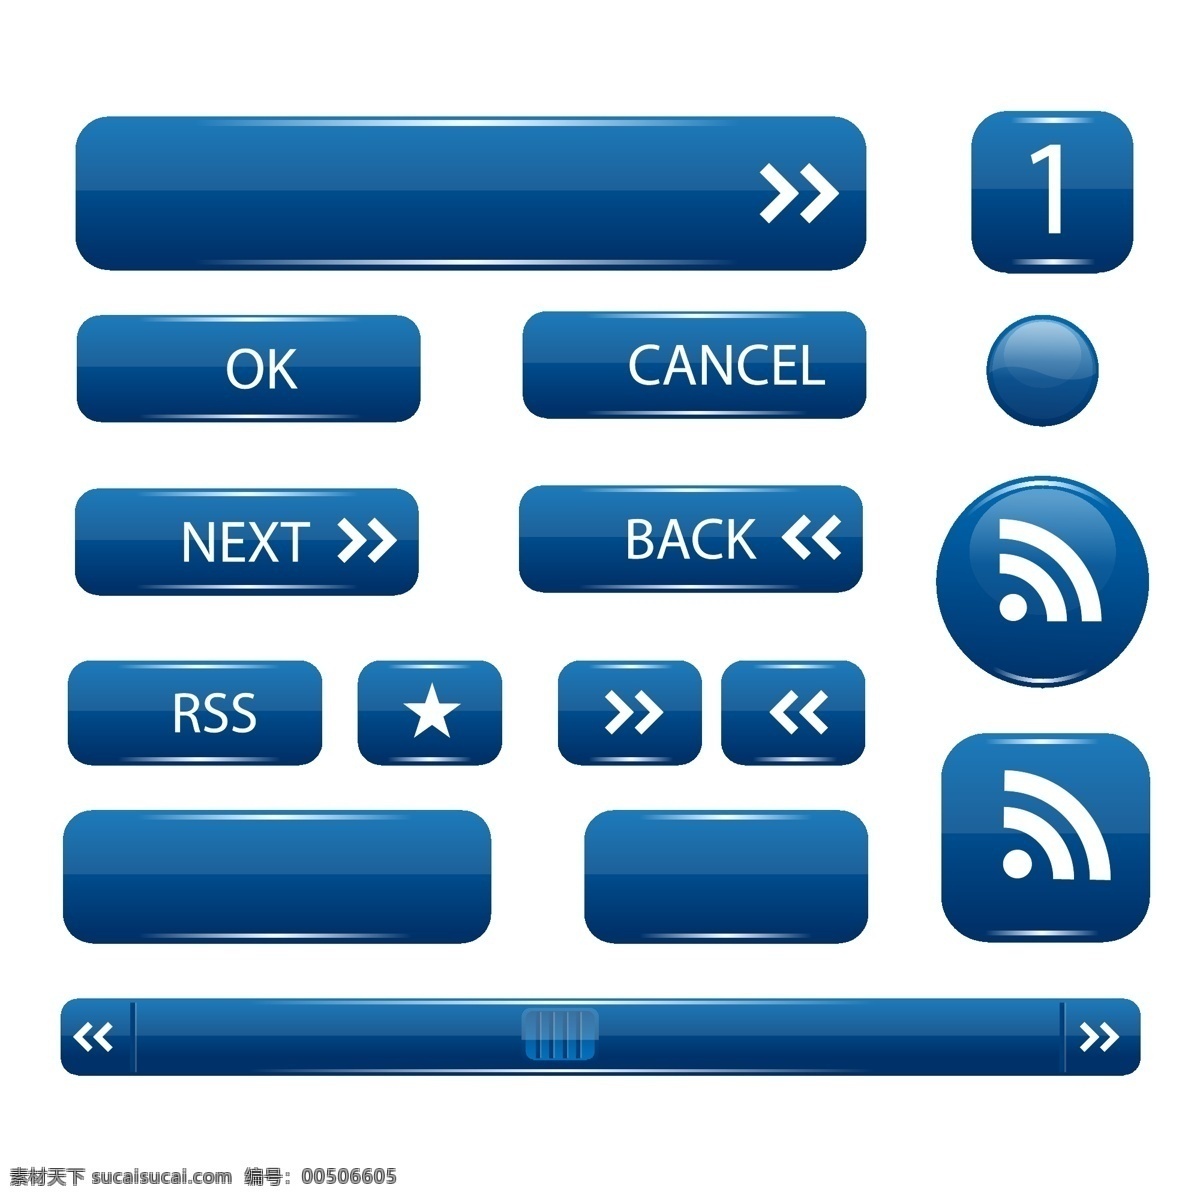 矢量界面按钮 按钮 用户界面 用户界面设计 界面按钮 矢量 插画 ui 界面 自由 iphone 矢量图 其他矢量图